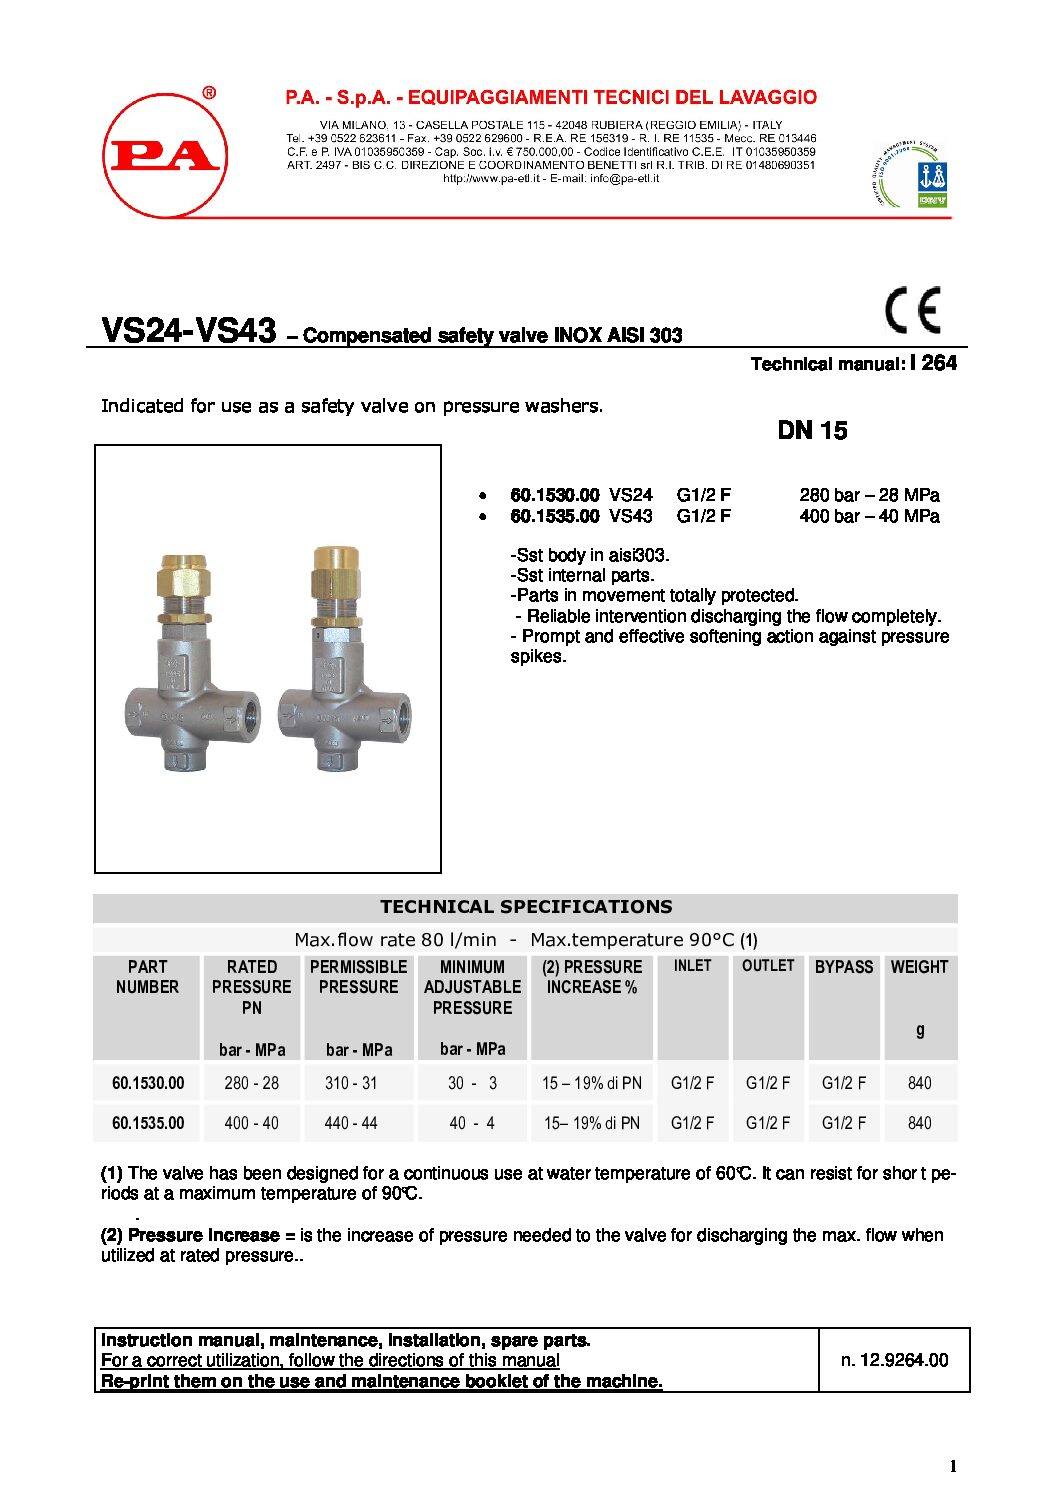 PA VS23 & VS43 safety valve technical manual